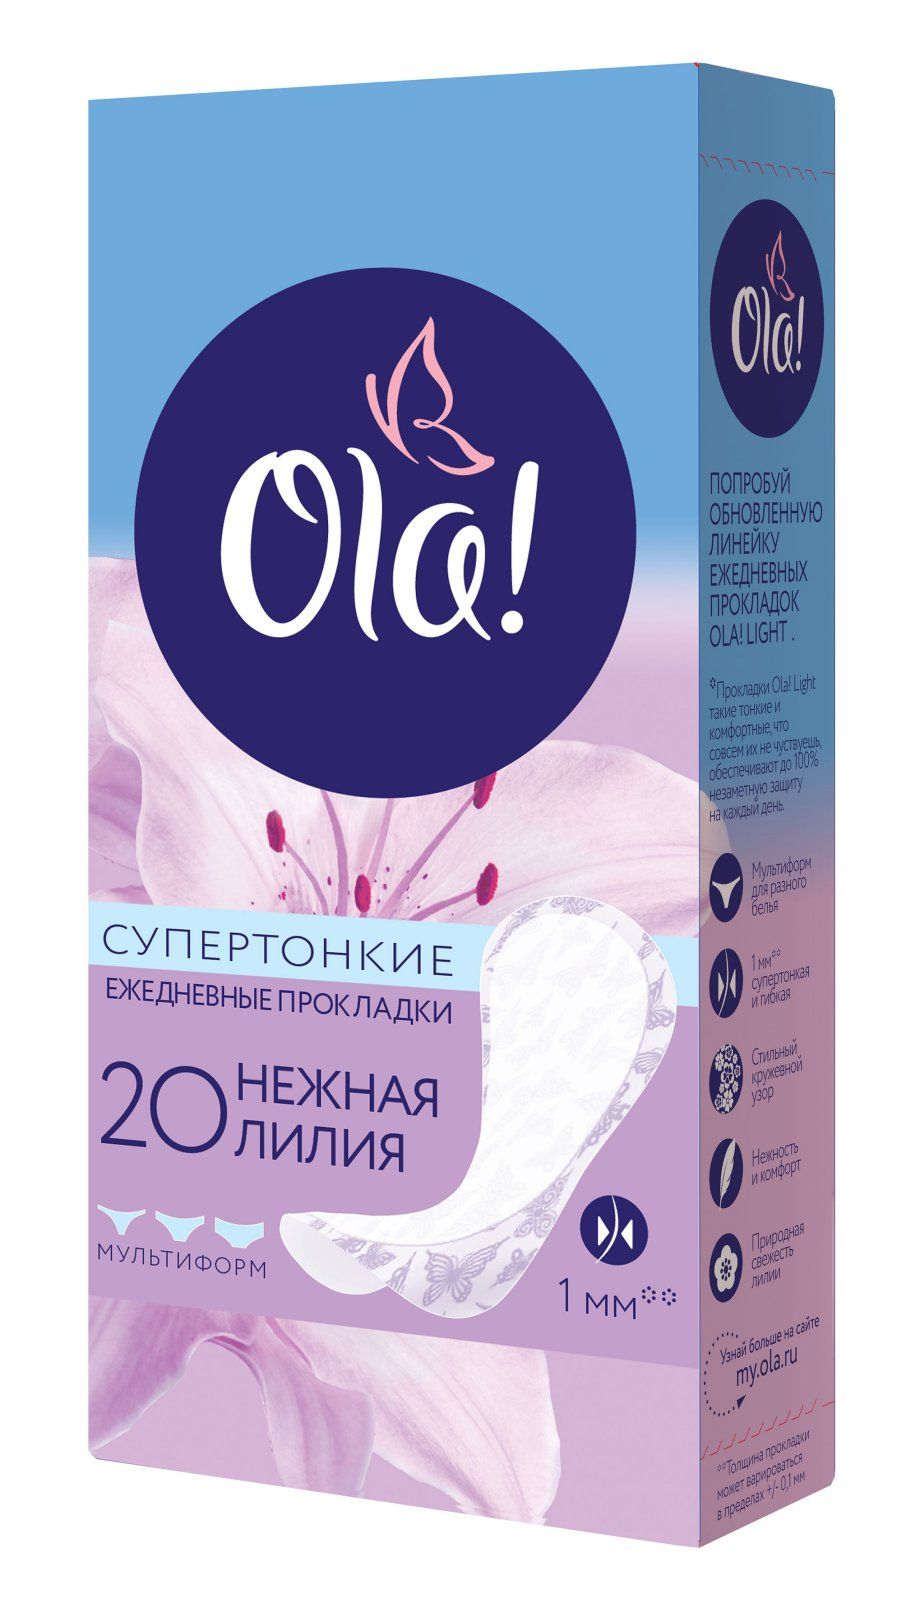 Ola! Light стринг-мультиформ прокладки ежедневные Нежная лилия, прокладки гигиенические, супертонки